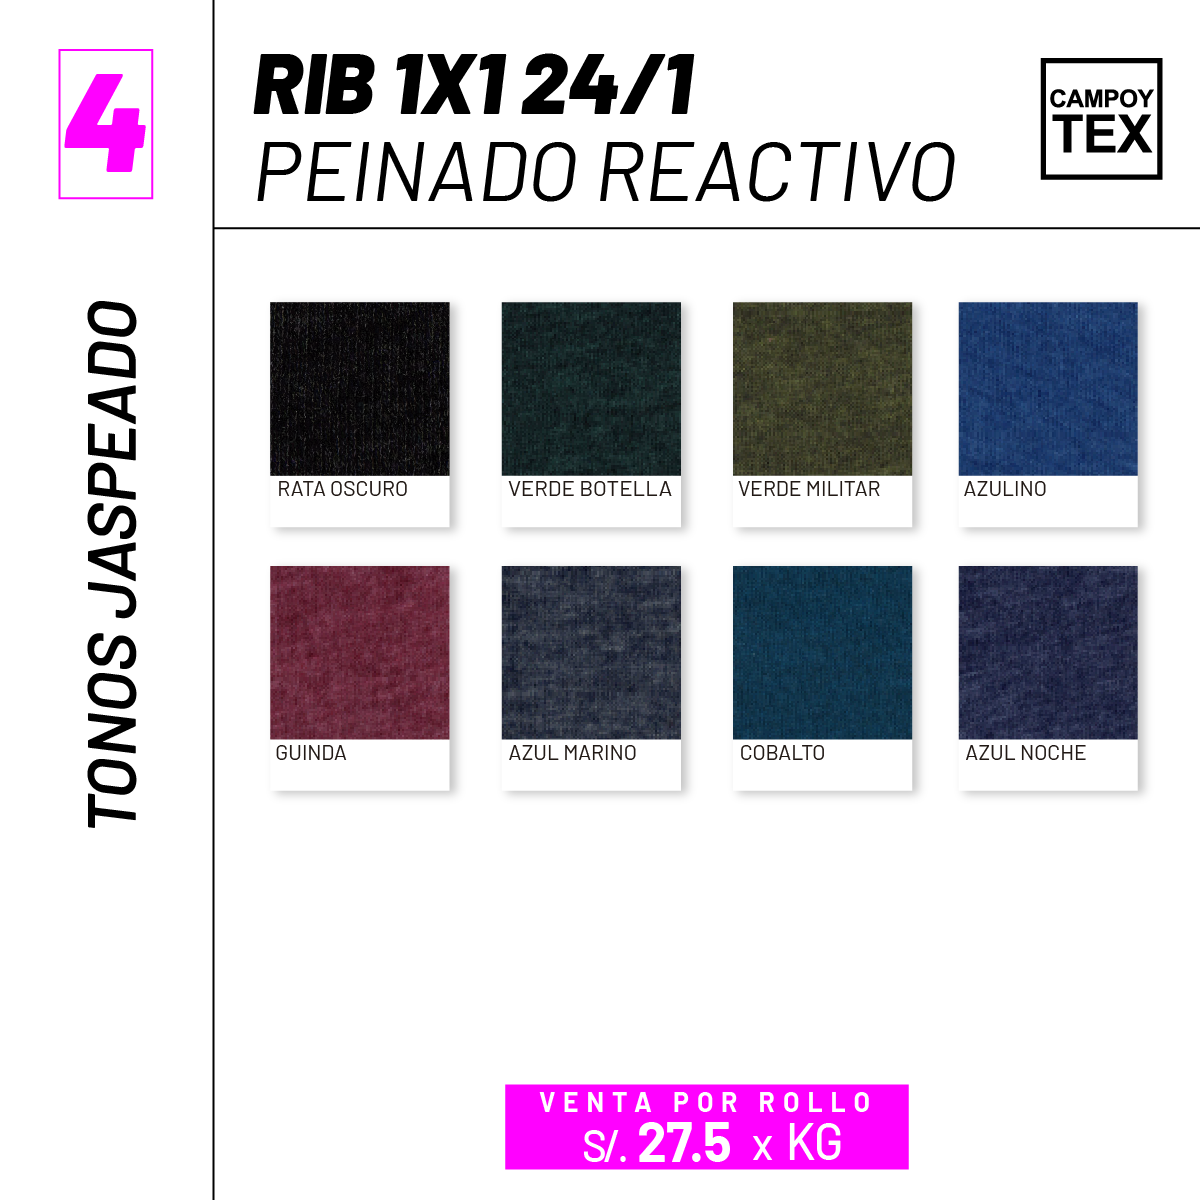 Rib 1x1 24/1 peinado reactivo (complemento Jersey)